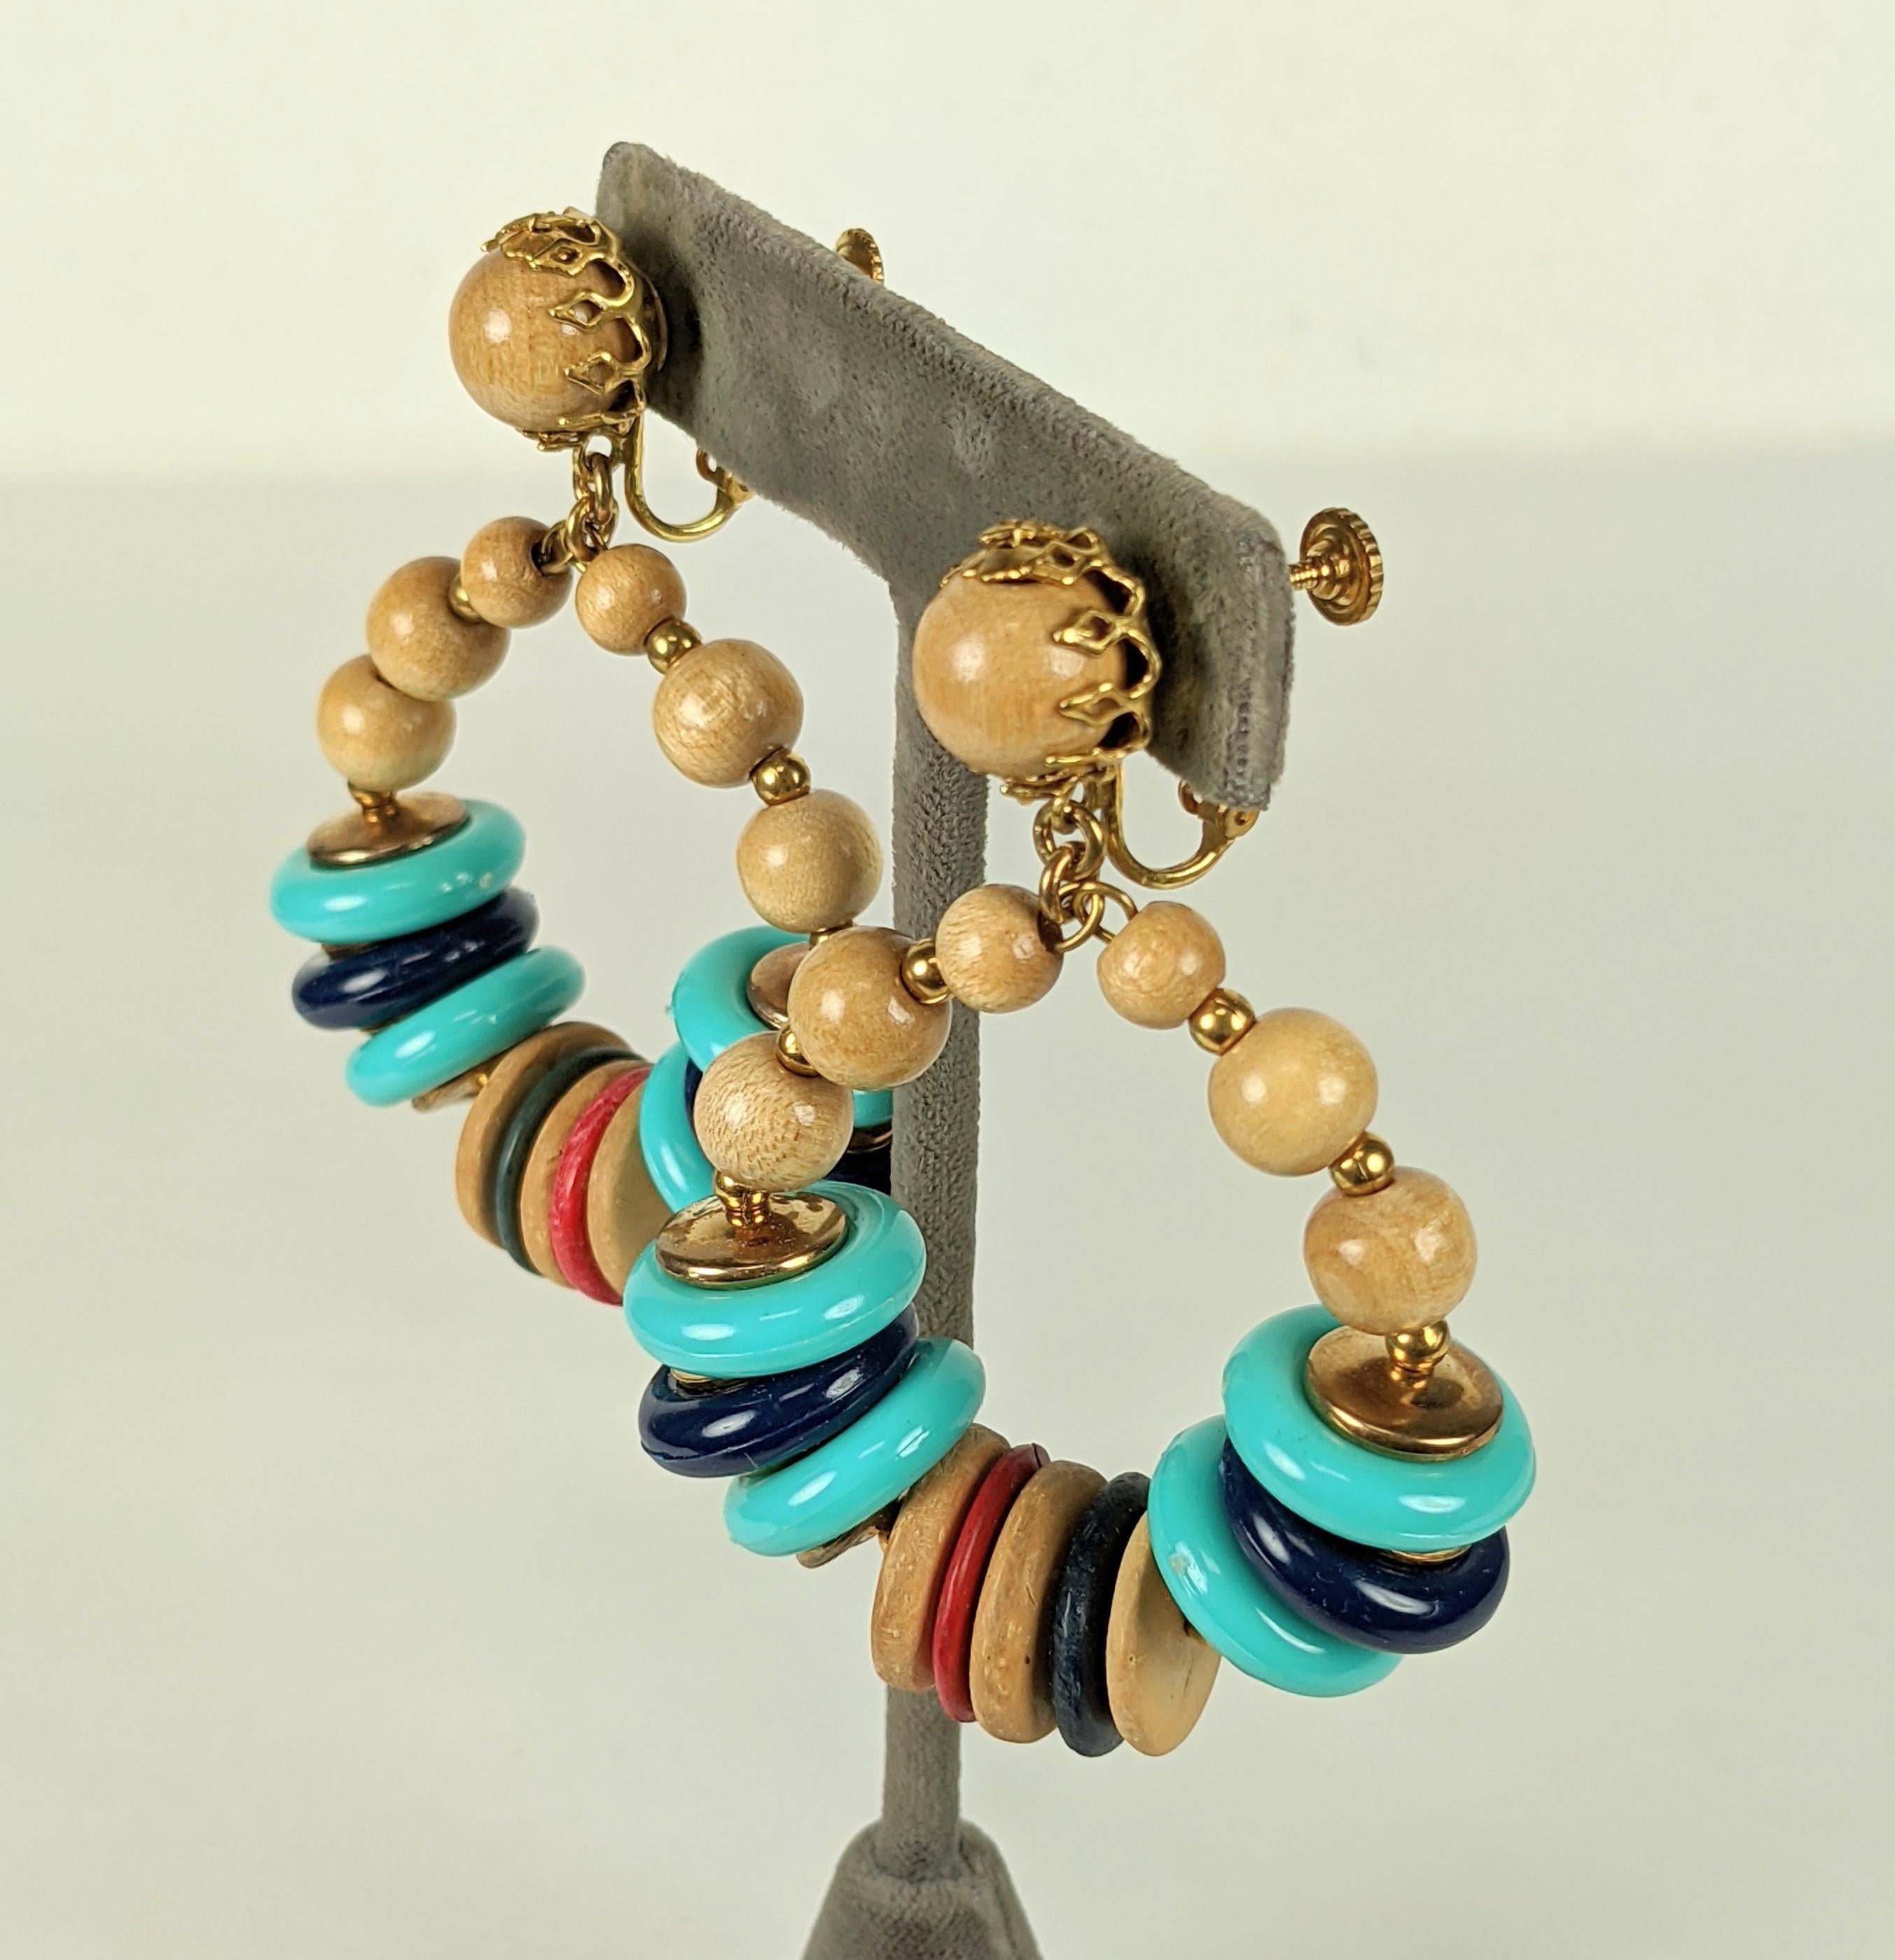 Remarquables boucles d'oreilles Miriam Haskell composées de bois, de bois teinté, de résine et de perles dorées. Raccords à clip réglables.  états-Unis des années 1960. 
2.5